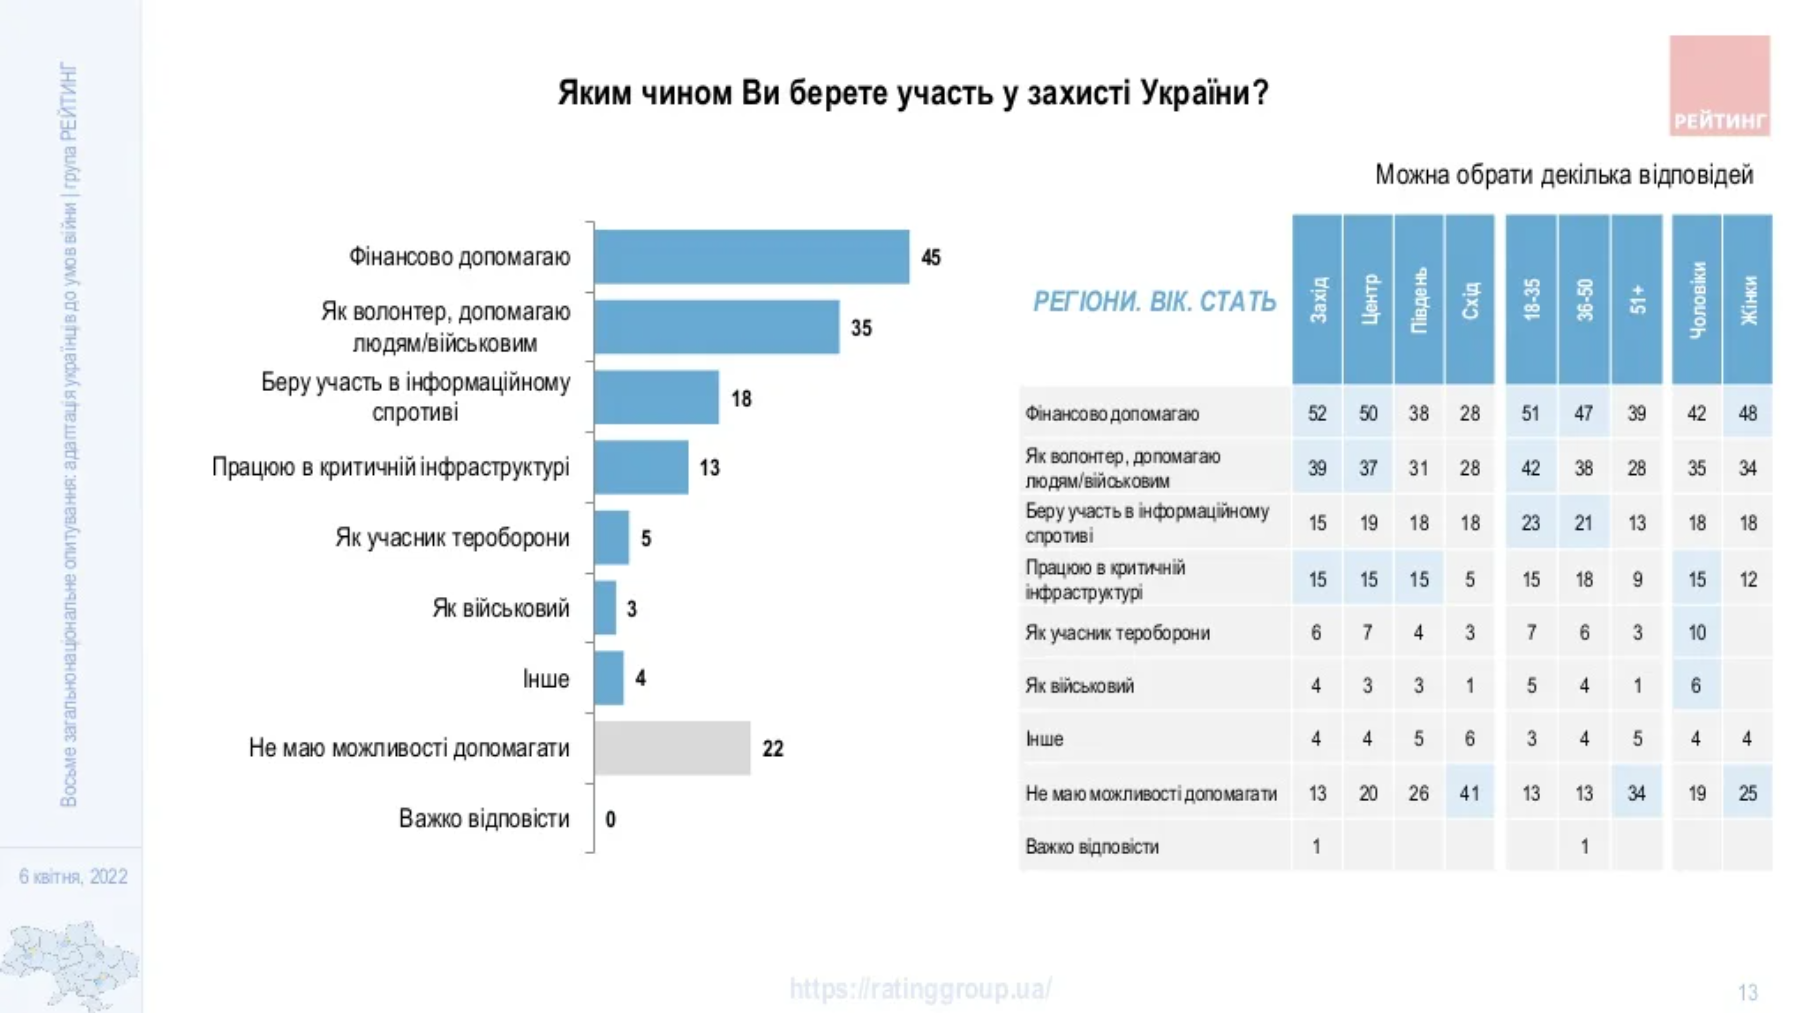 Больше половины украинцев считают невозможным возобновление дружеских отношений с россиянами